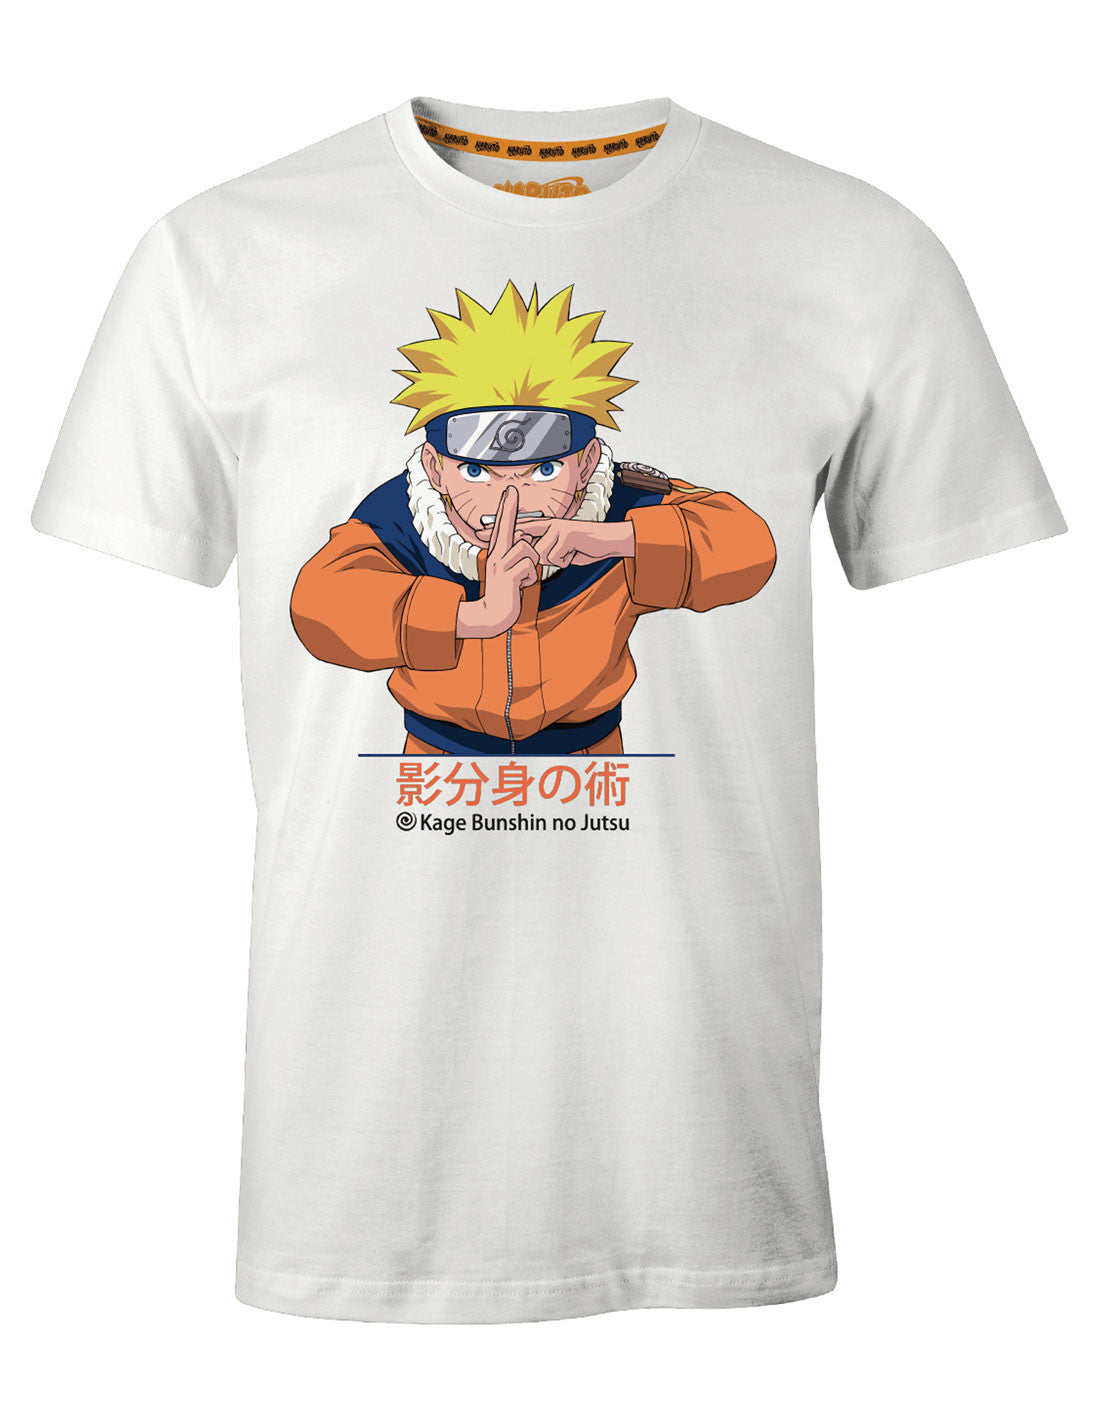 Naruto T-shirt - Multicloning